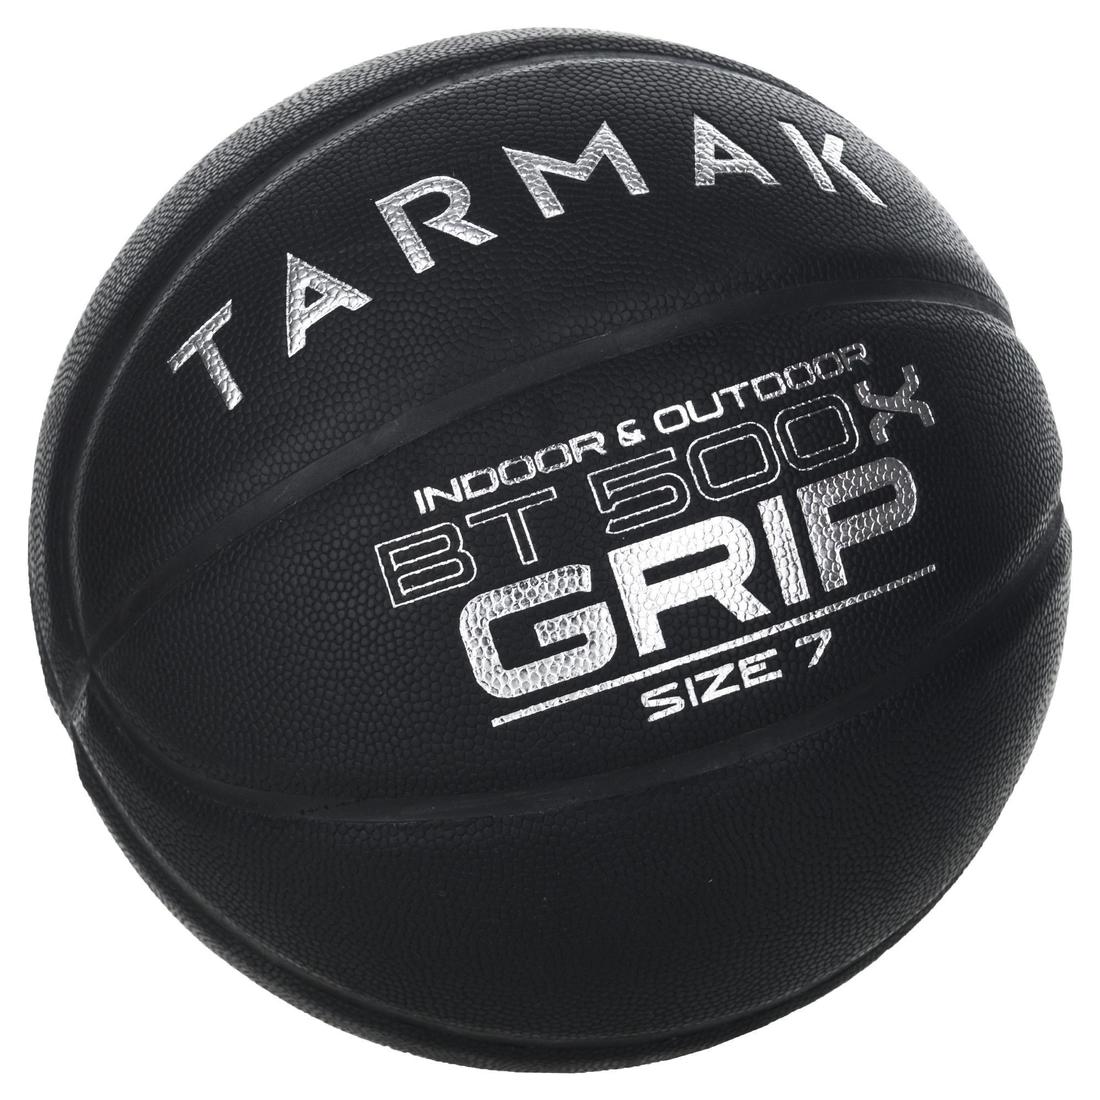 TARMAK(ターマック) バスケットボール BT500 Grip 7号 大人用